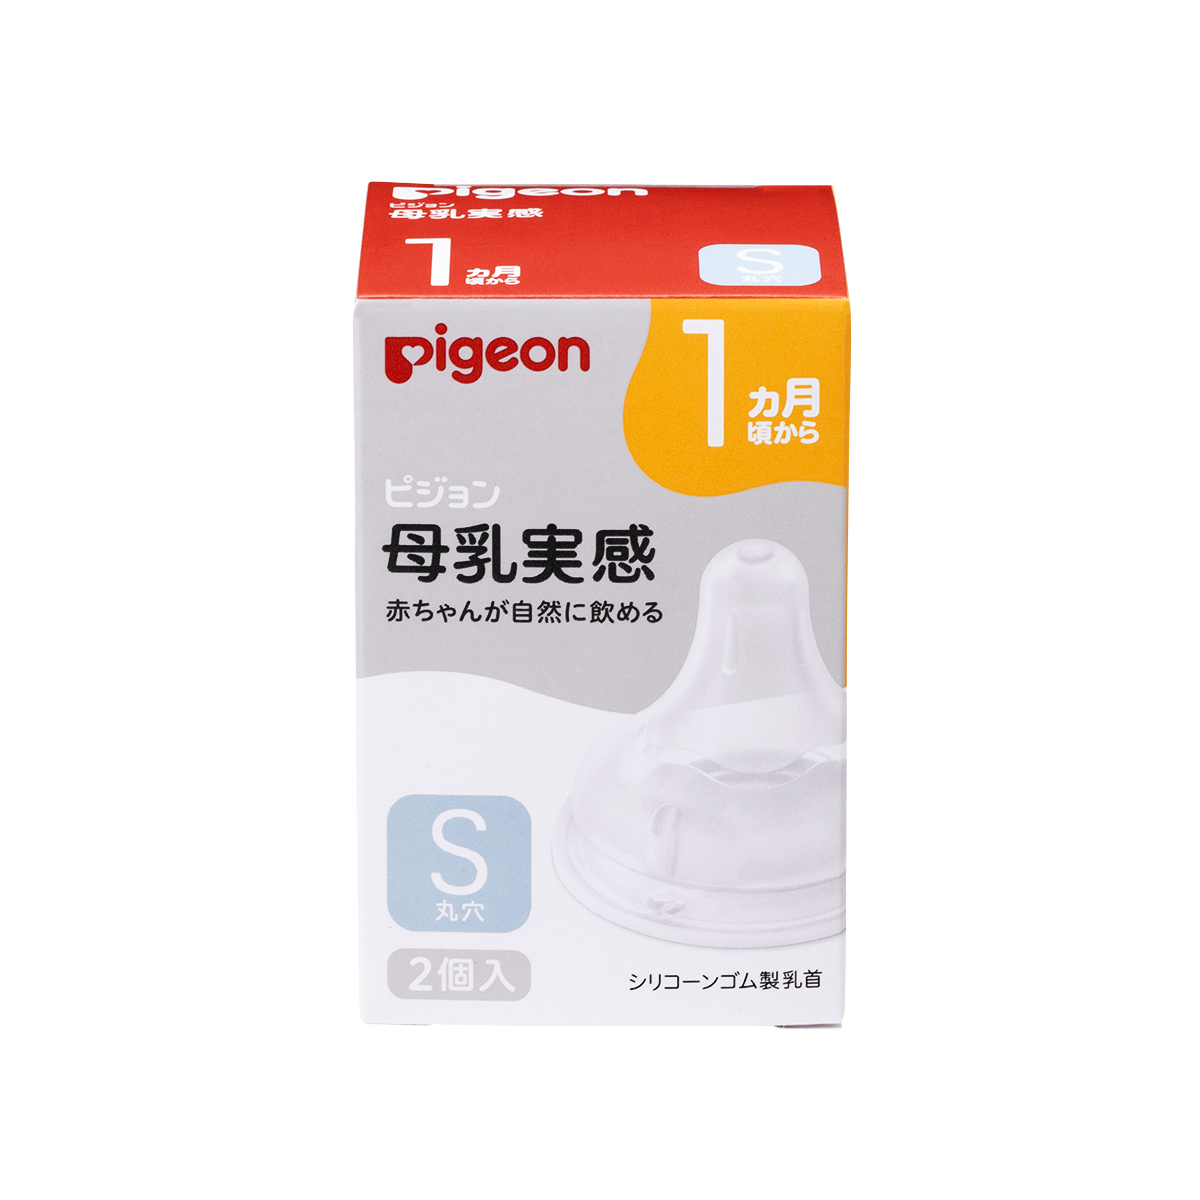 Núm ty Pigeon siêu mềm Plus thế hệ III phiên bản Nhật 2 cái hộp